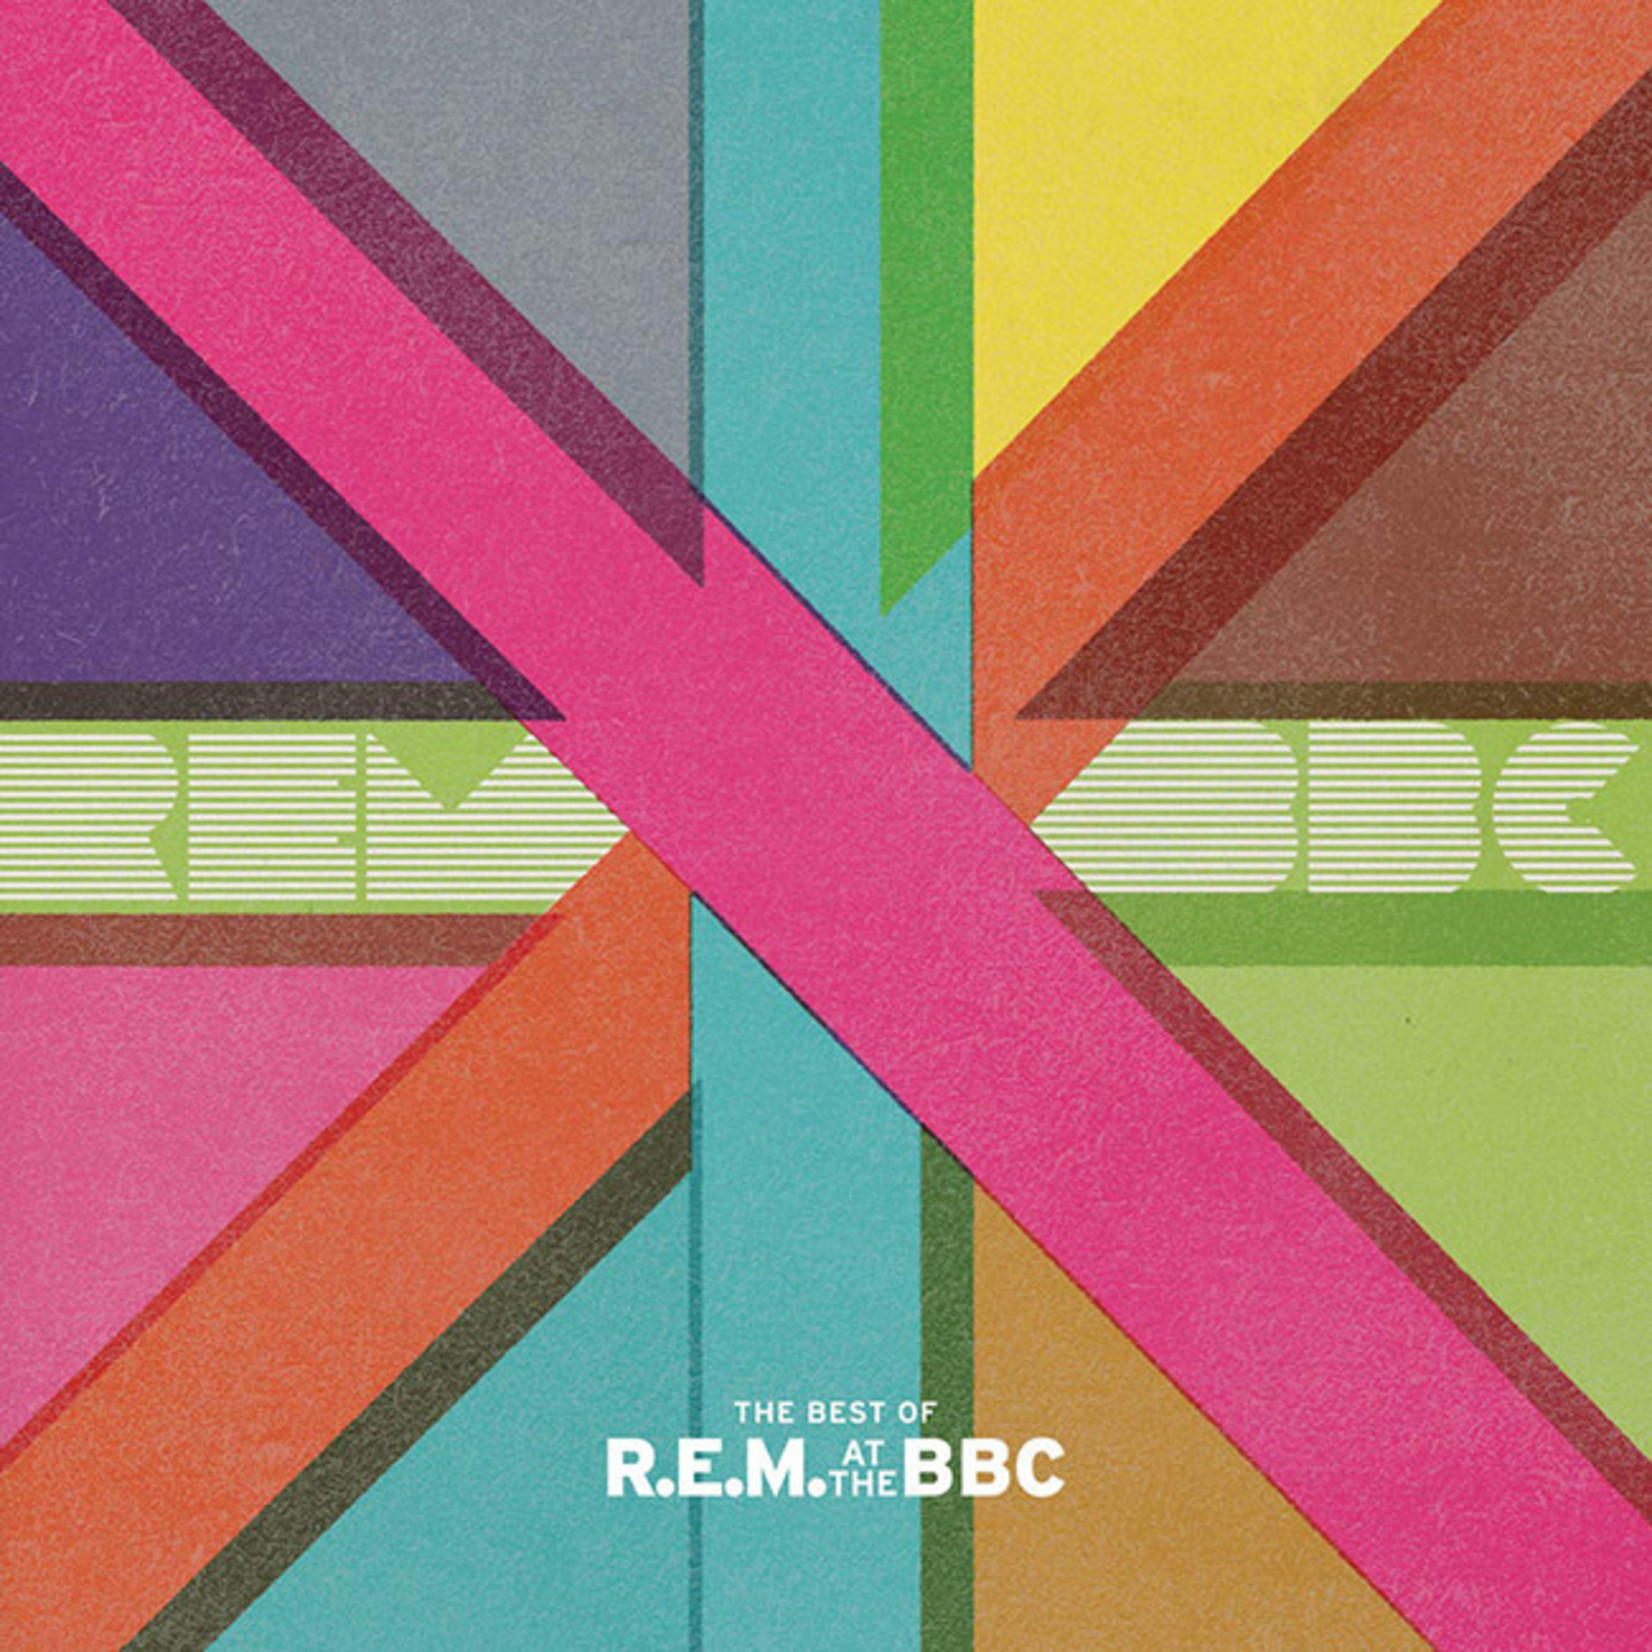 [New] R.E.M. - The Best of R.E.M. at the BBC